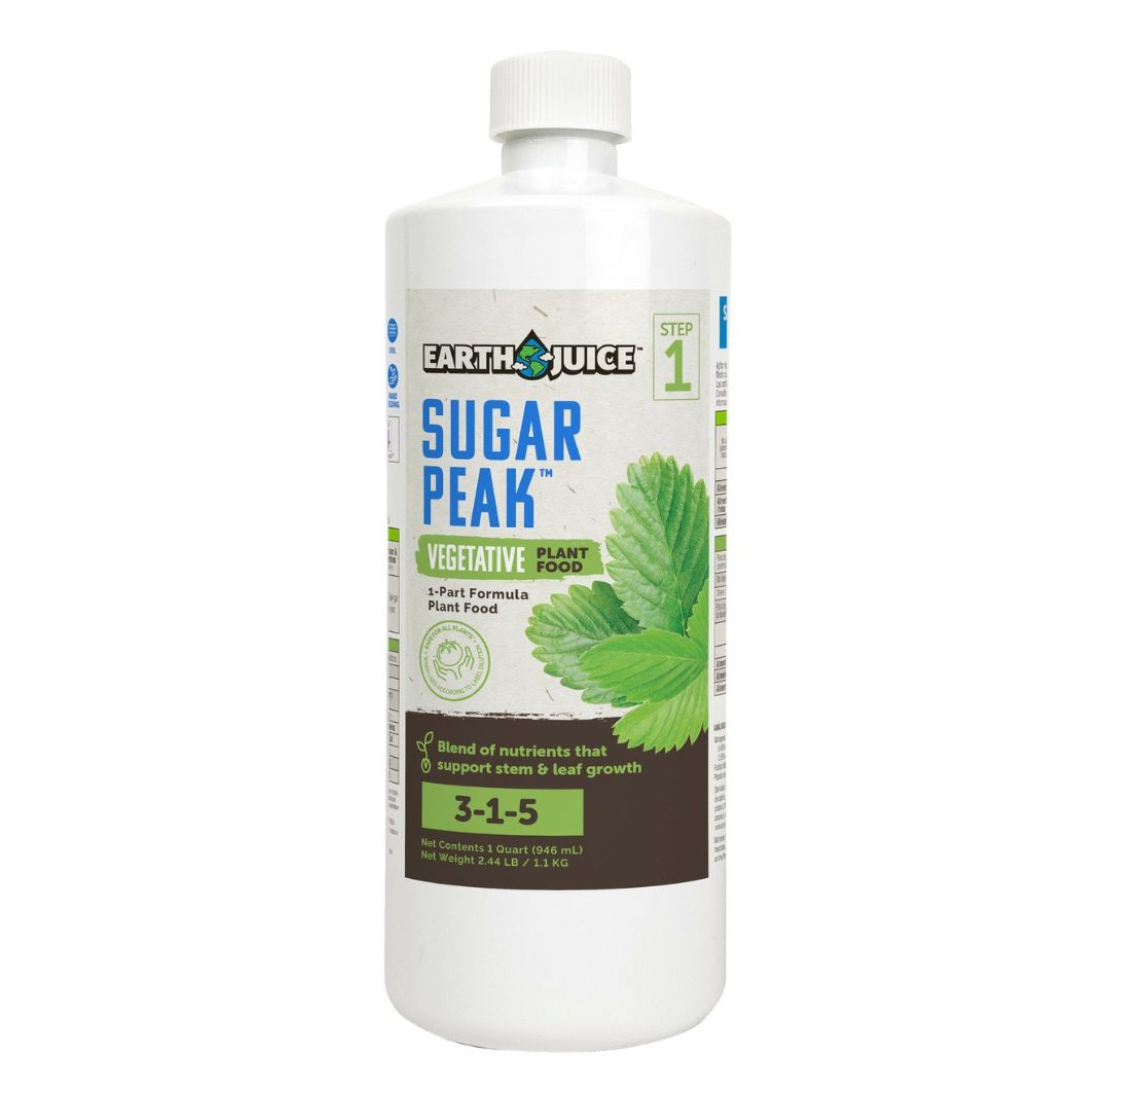 Product Secondary Image:Earth Juice Sugar Peak Vegetative